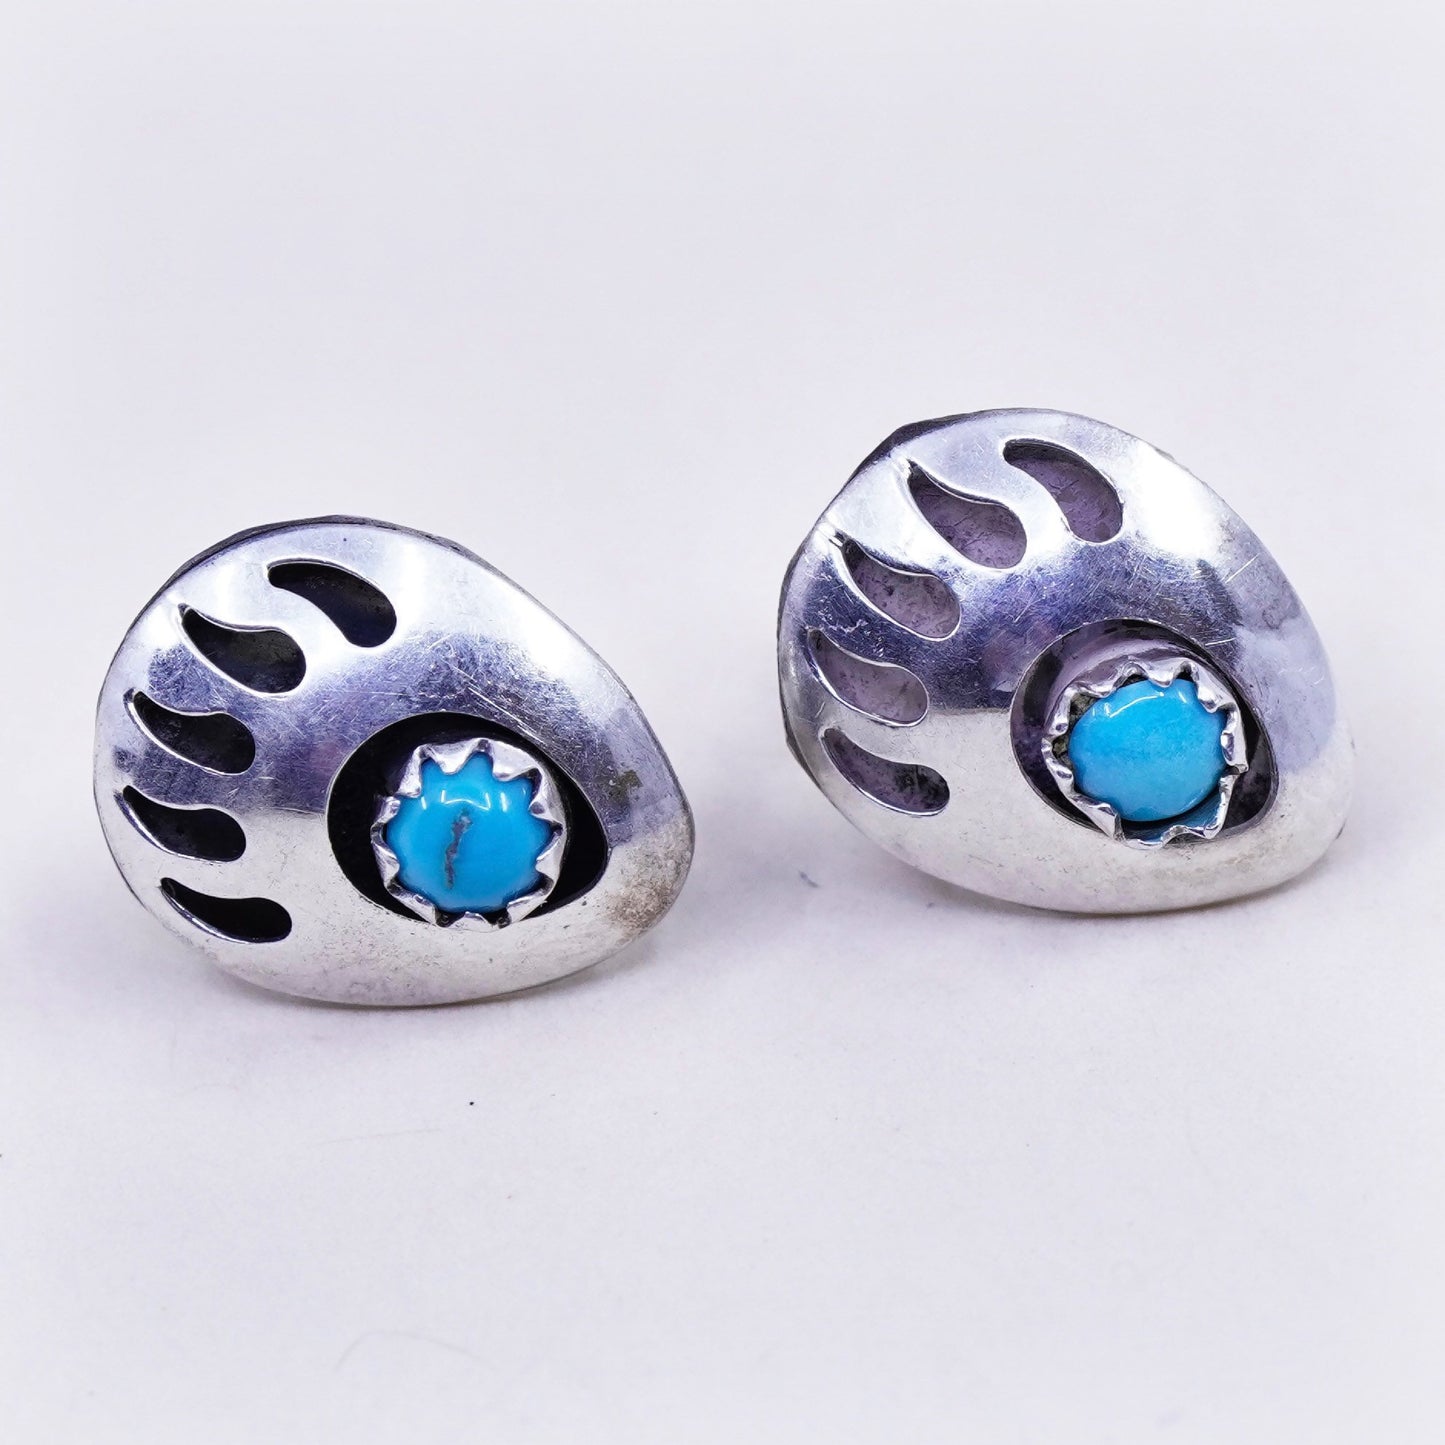 Southwestern sterling silver handmade earrings, bear paw 925 studs w/ turquoise